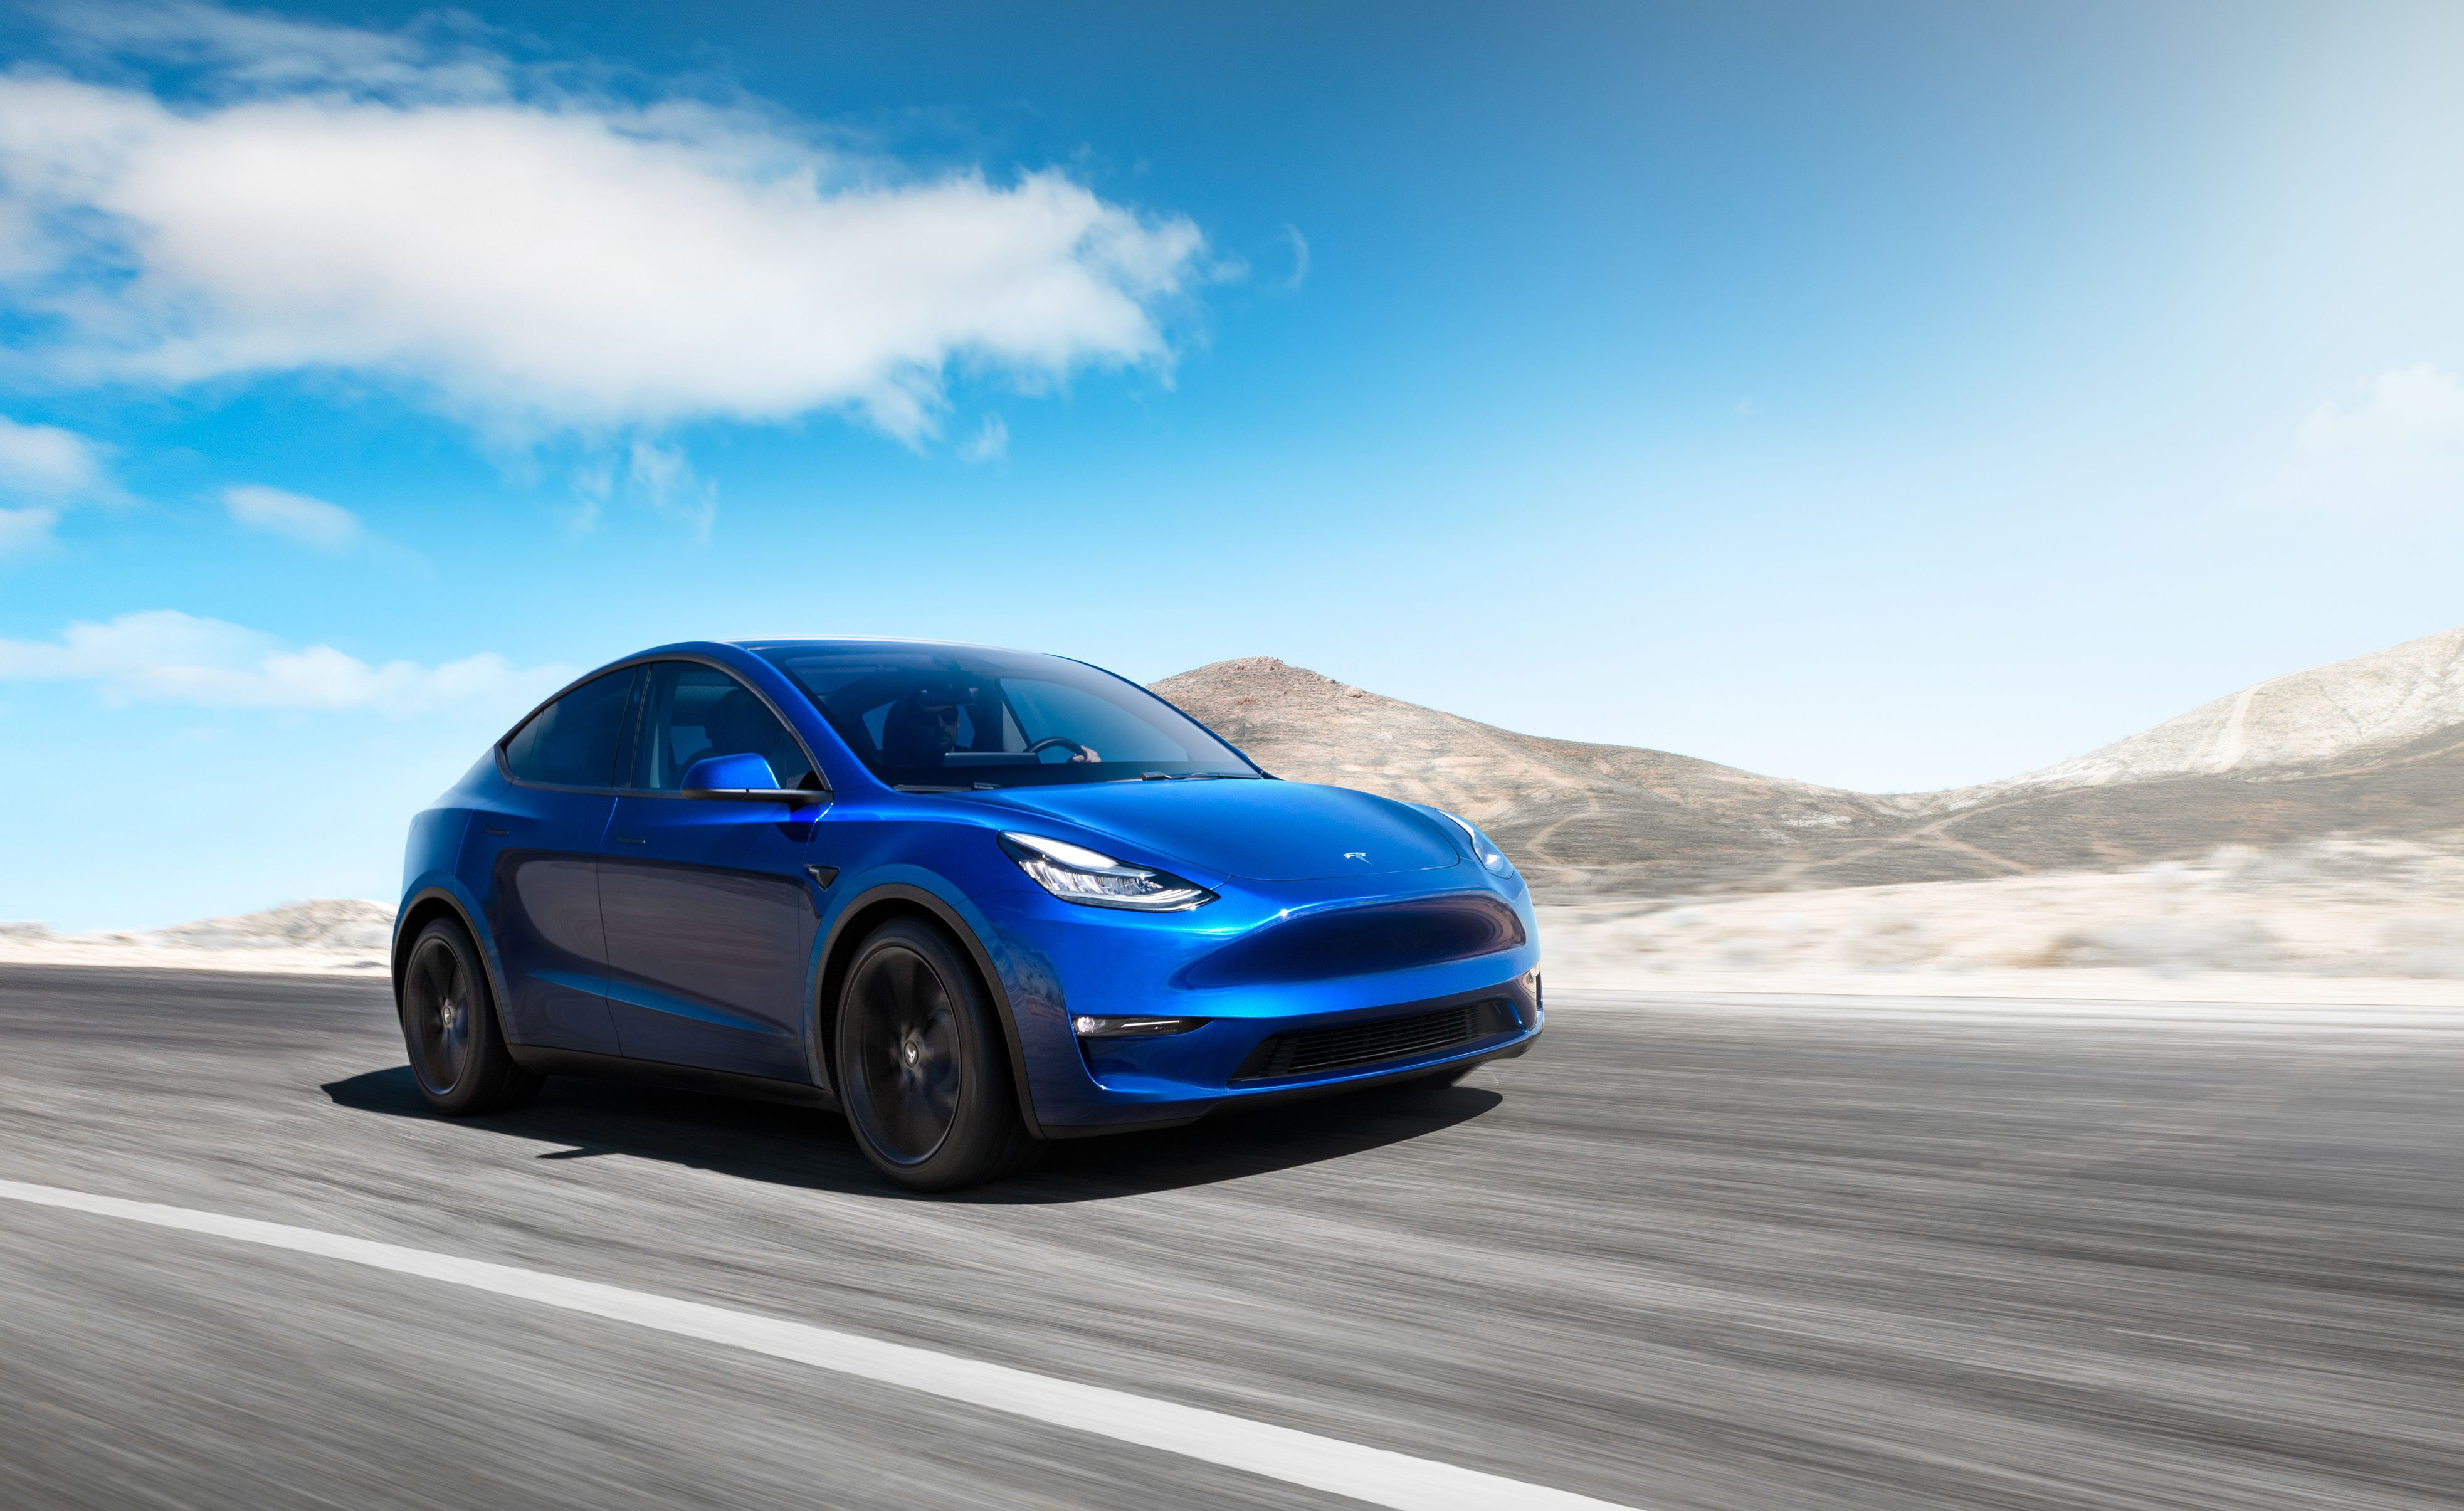 Car body, Model Y - Tesla Studios